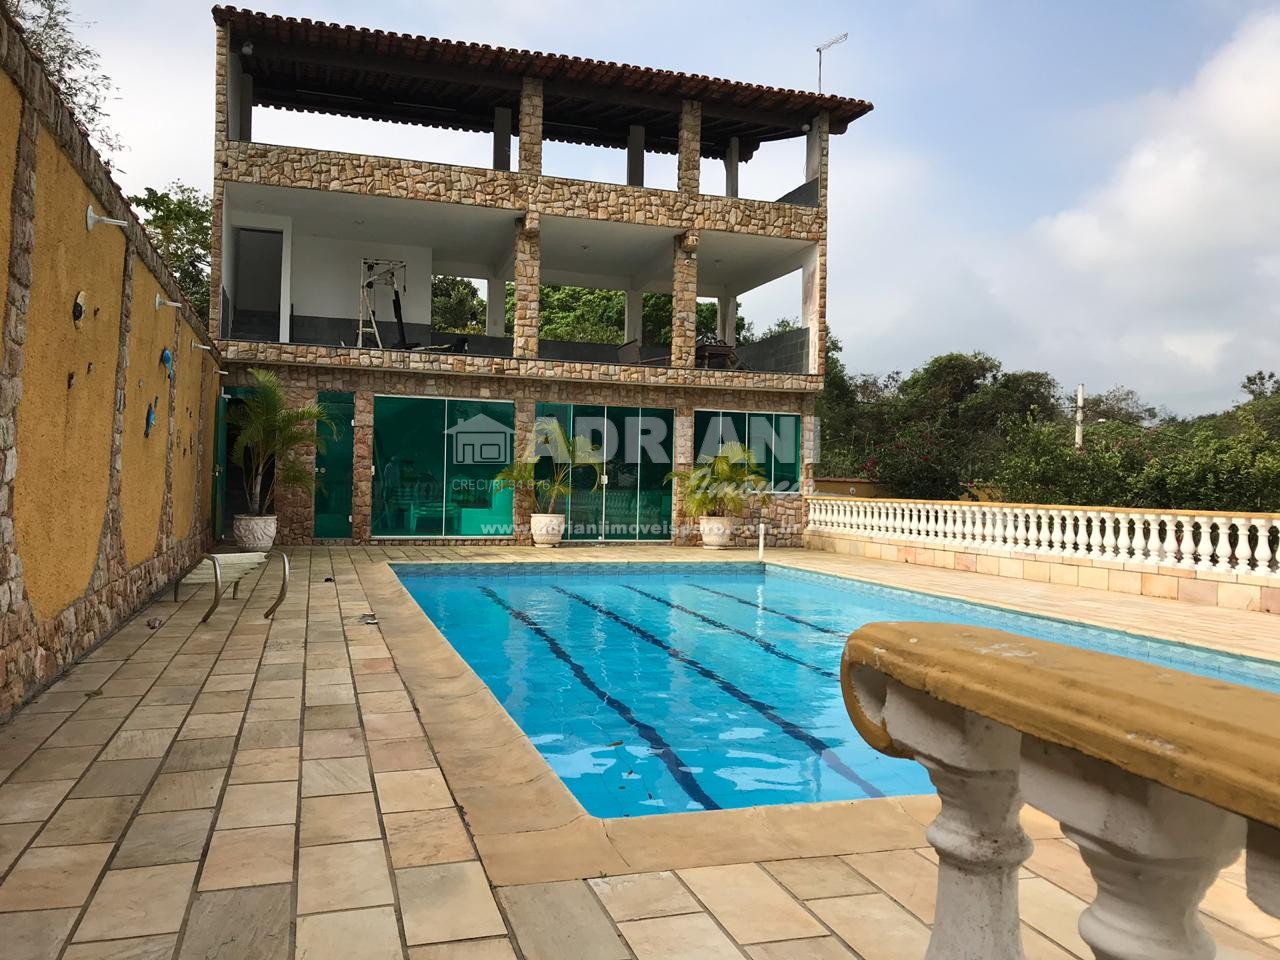 Cód 398 Casa independente, com 6 quartos, piscina, Bosque do Peró, Cabo Frio – RJ